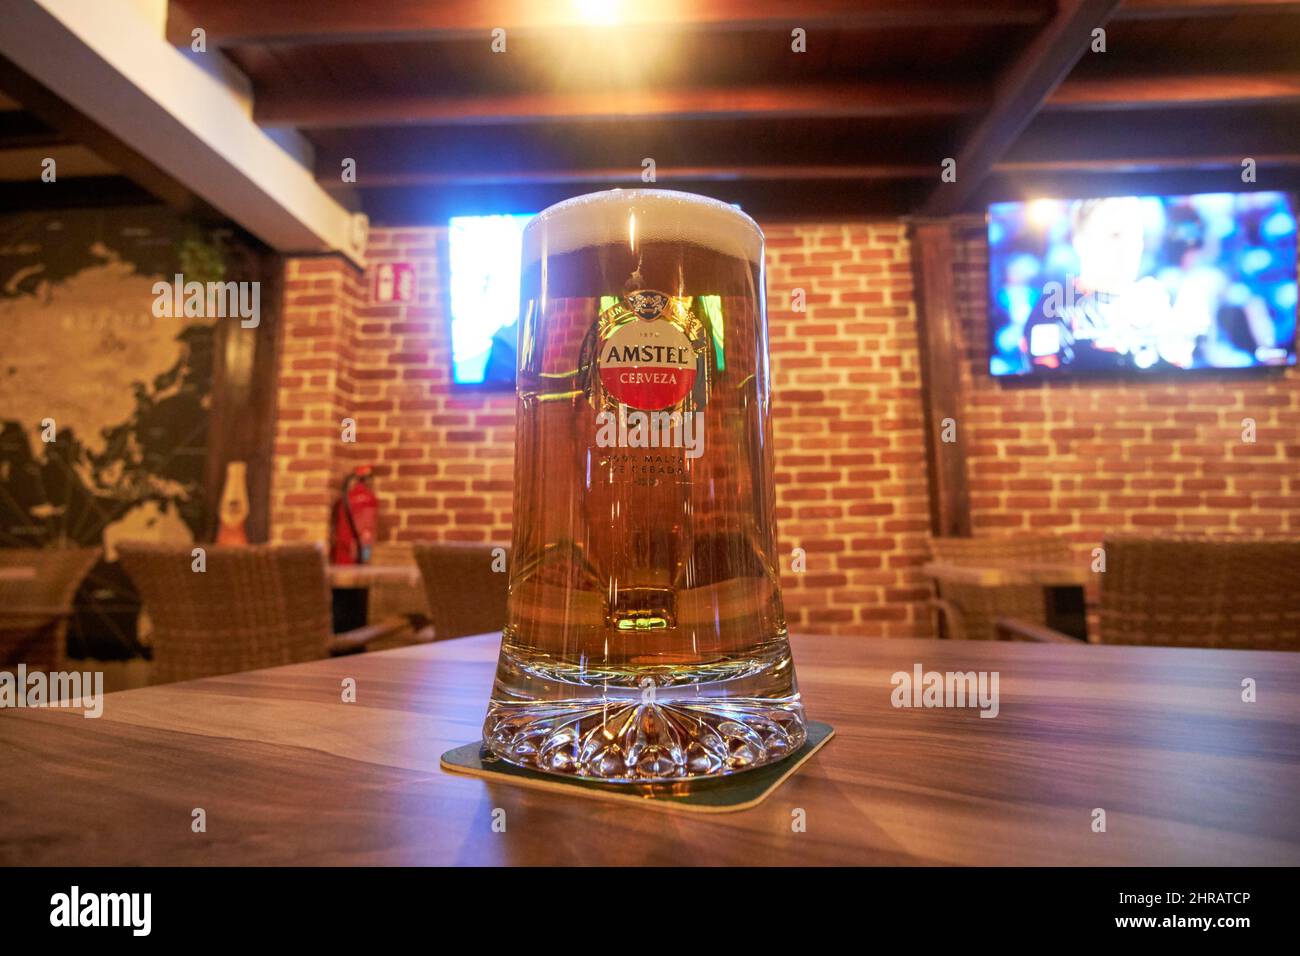 Bier von amstel beim Fußballschauen in einer Bar auf Lanzarote, Kanarische Inseln, Spanien Stockfoto